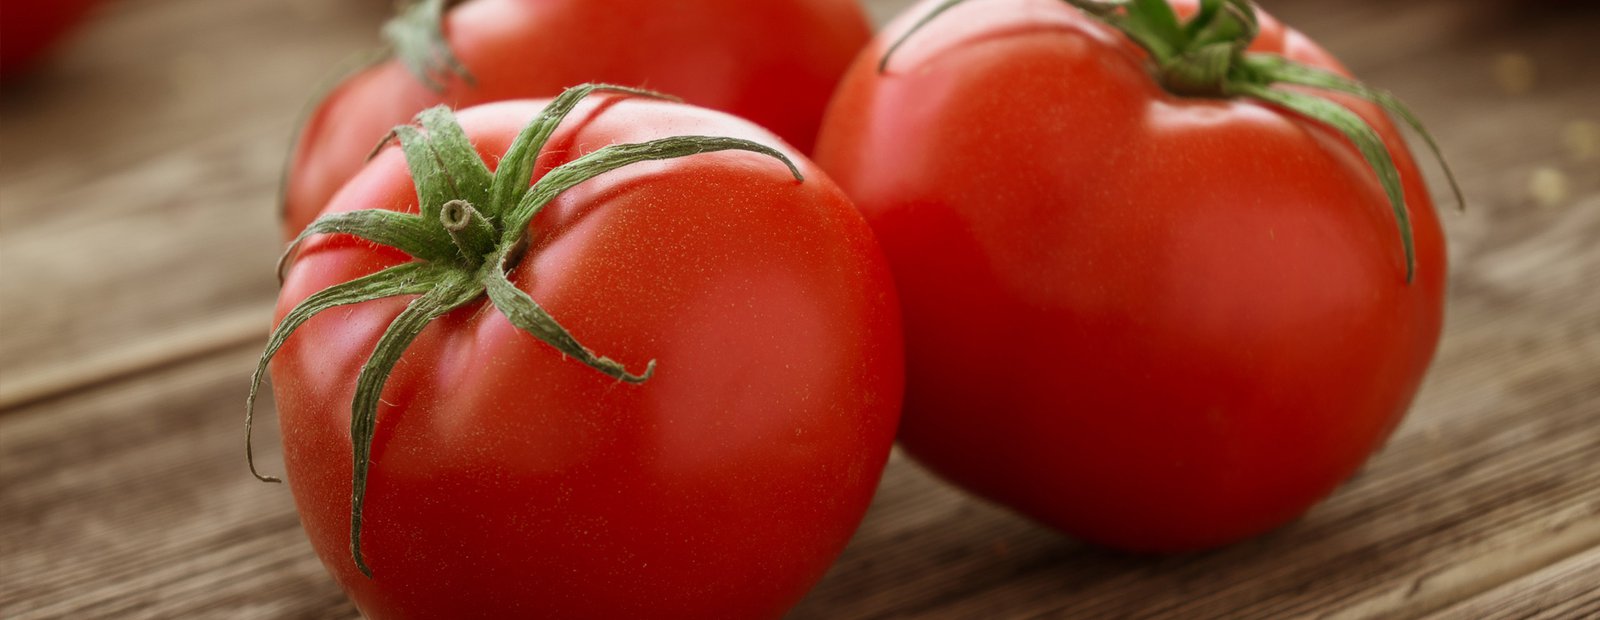 Los beneficios del consumo de tomate para la salud